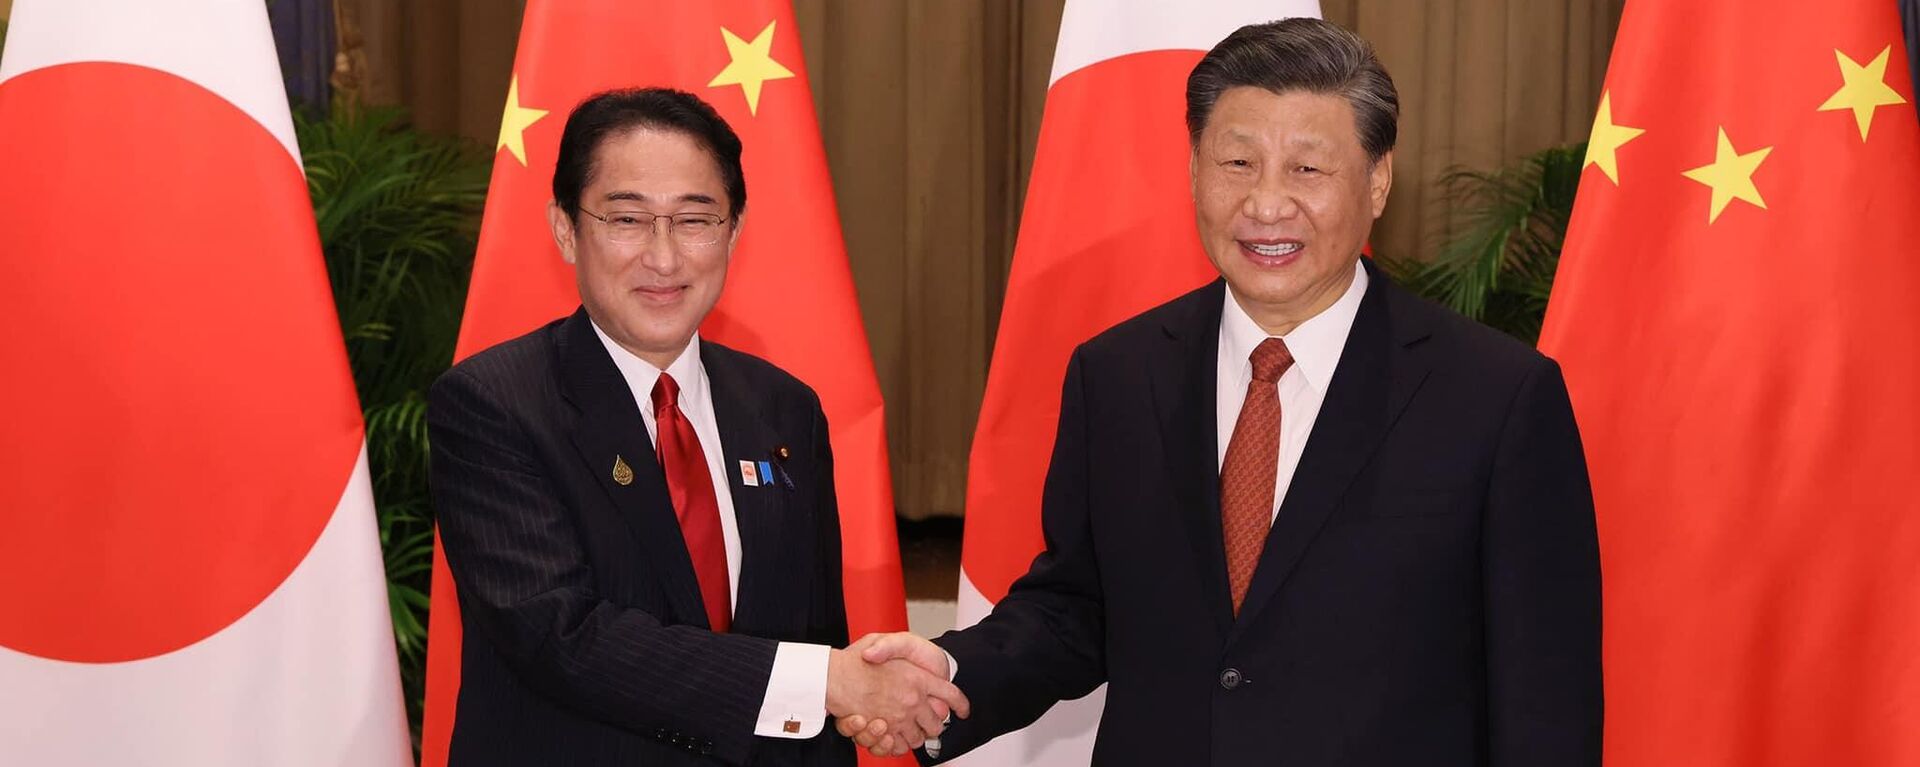 11月の日中首脳会談で笑顔で握手を交わす日本の岸田首相と中国の習主席 - Sputnik 日本, 1920, 22.12.2022